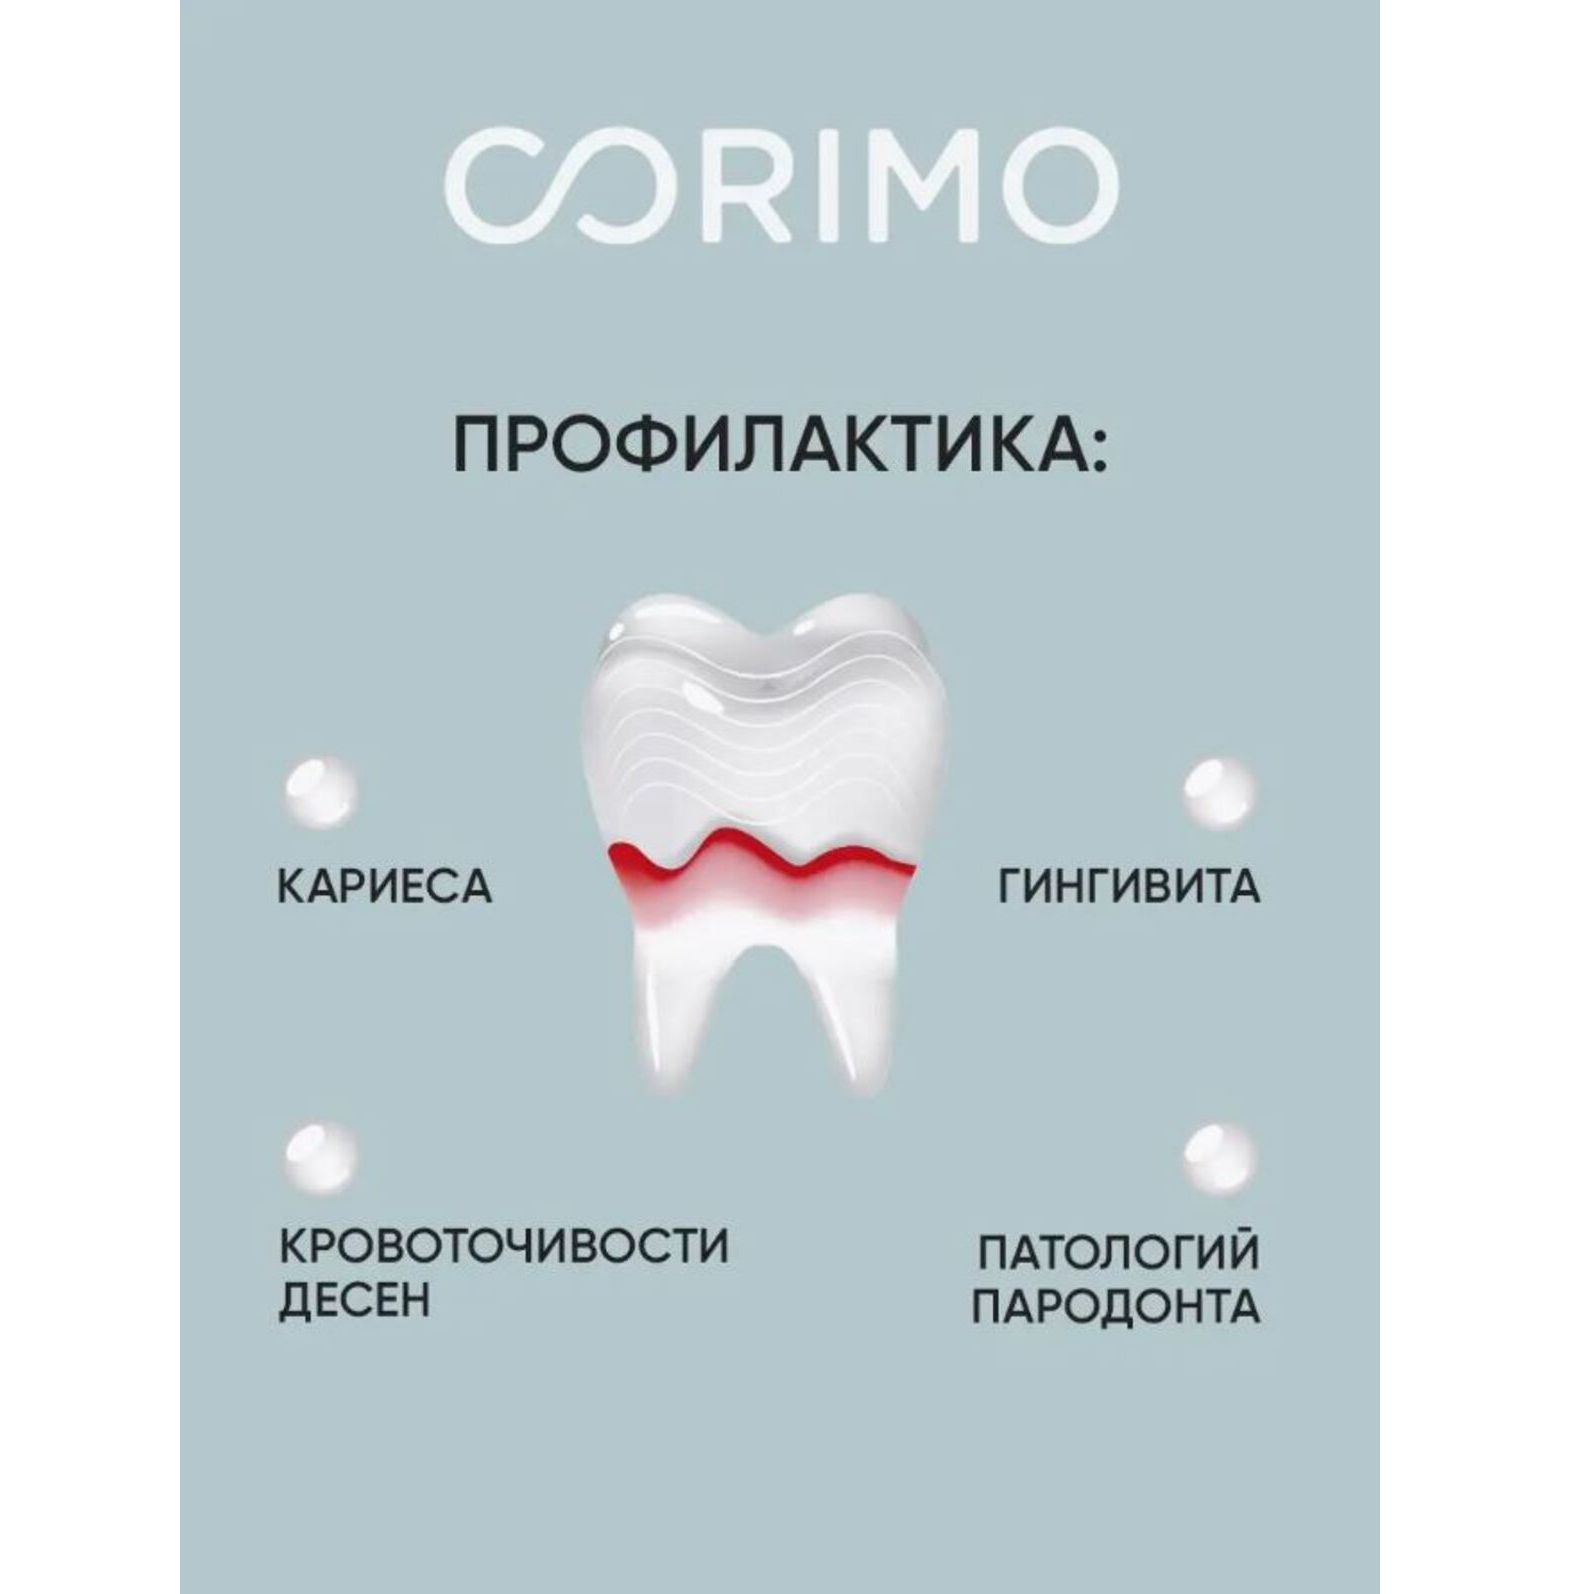 Зубная паста CORIMO профилактическая против пародонтоза и парадонтита 75 г - фото 5